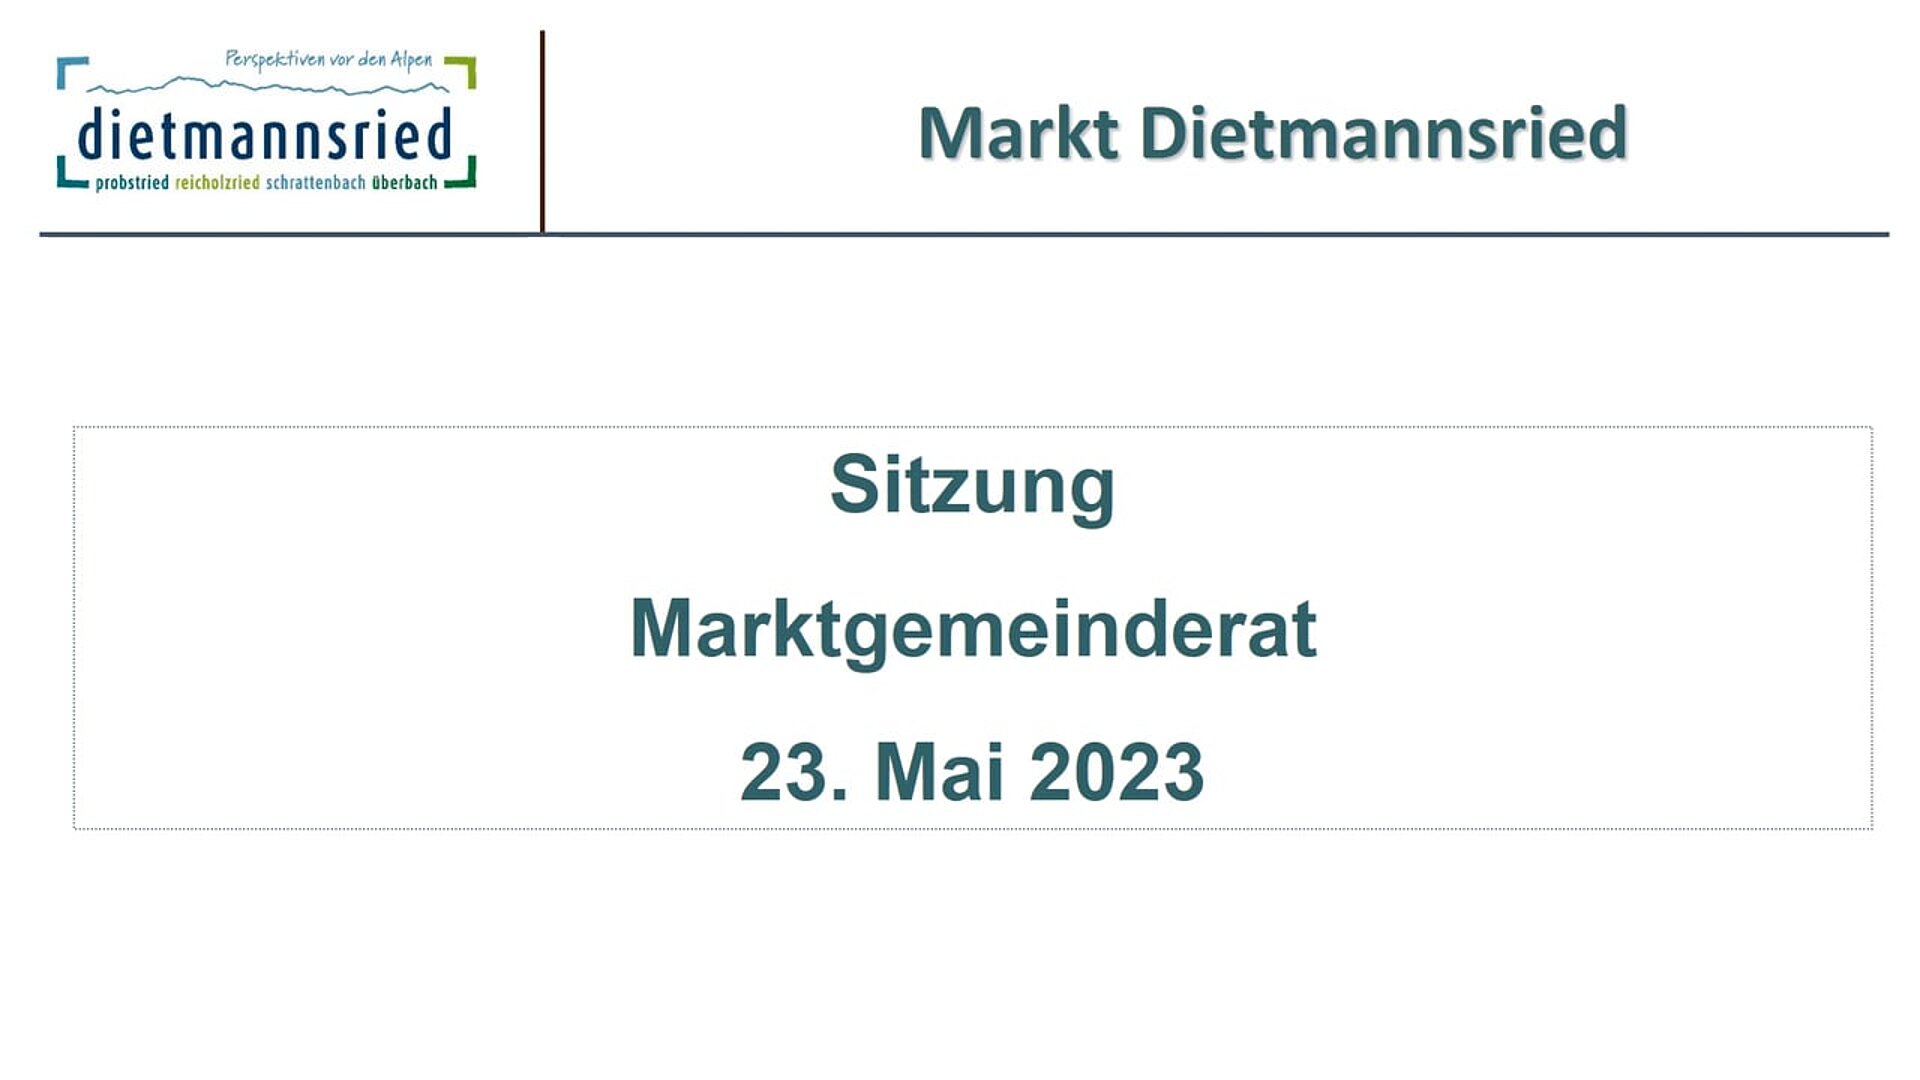 Sitzung Marktgemeinderat vom 23. Mai 2023